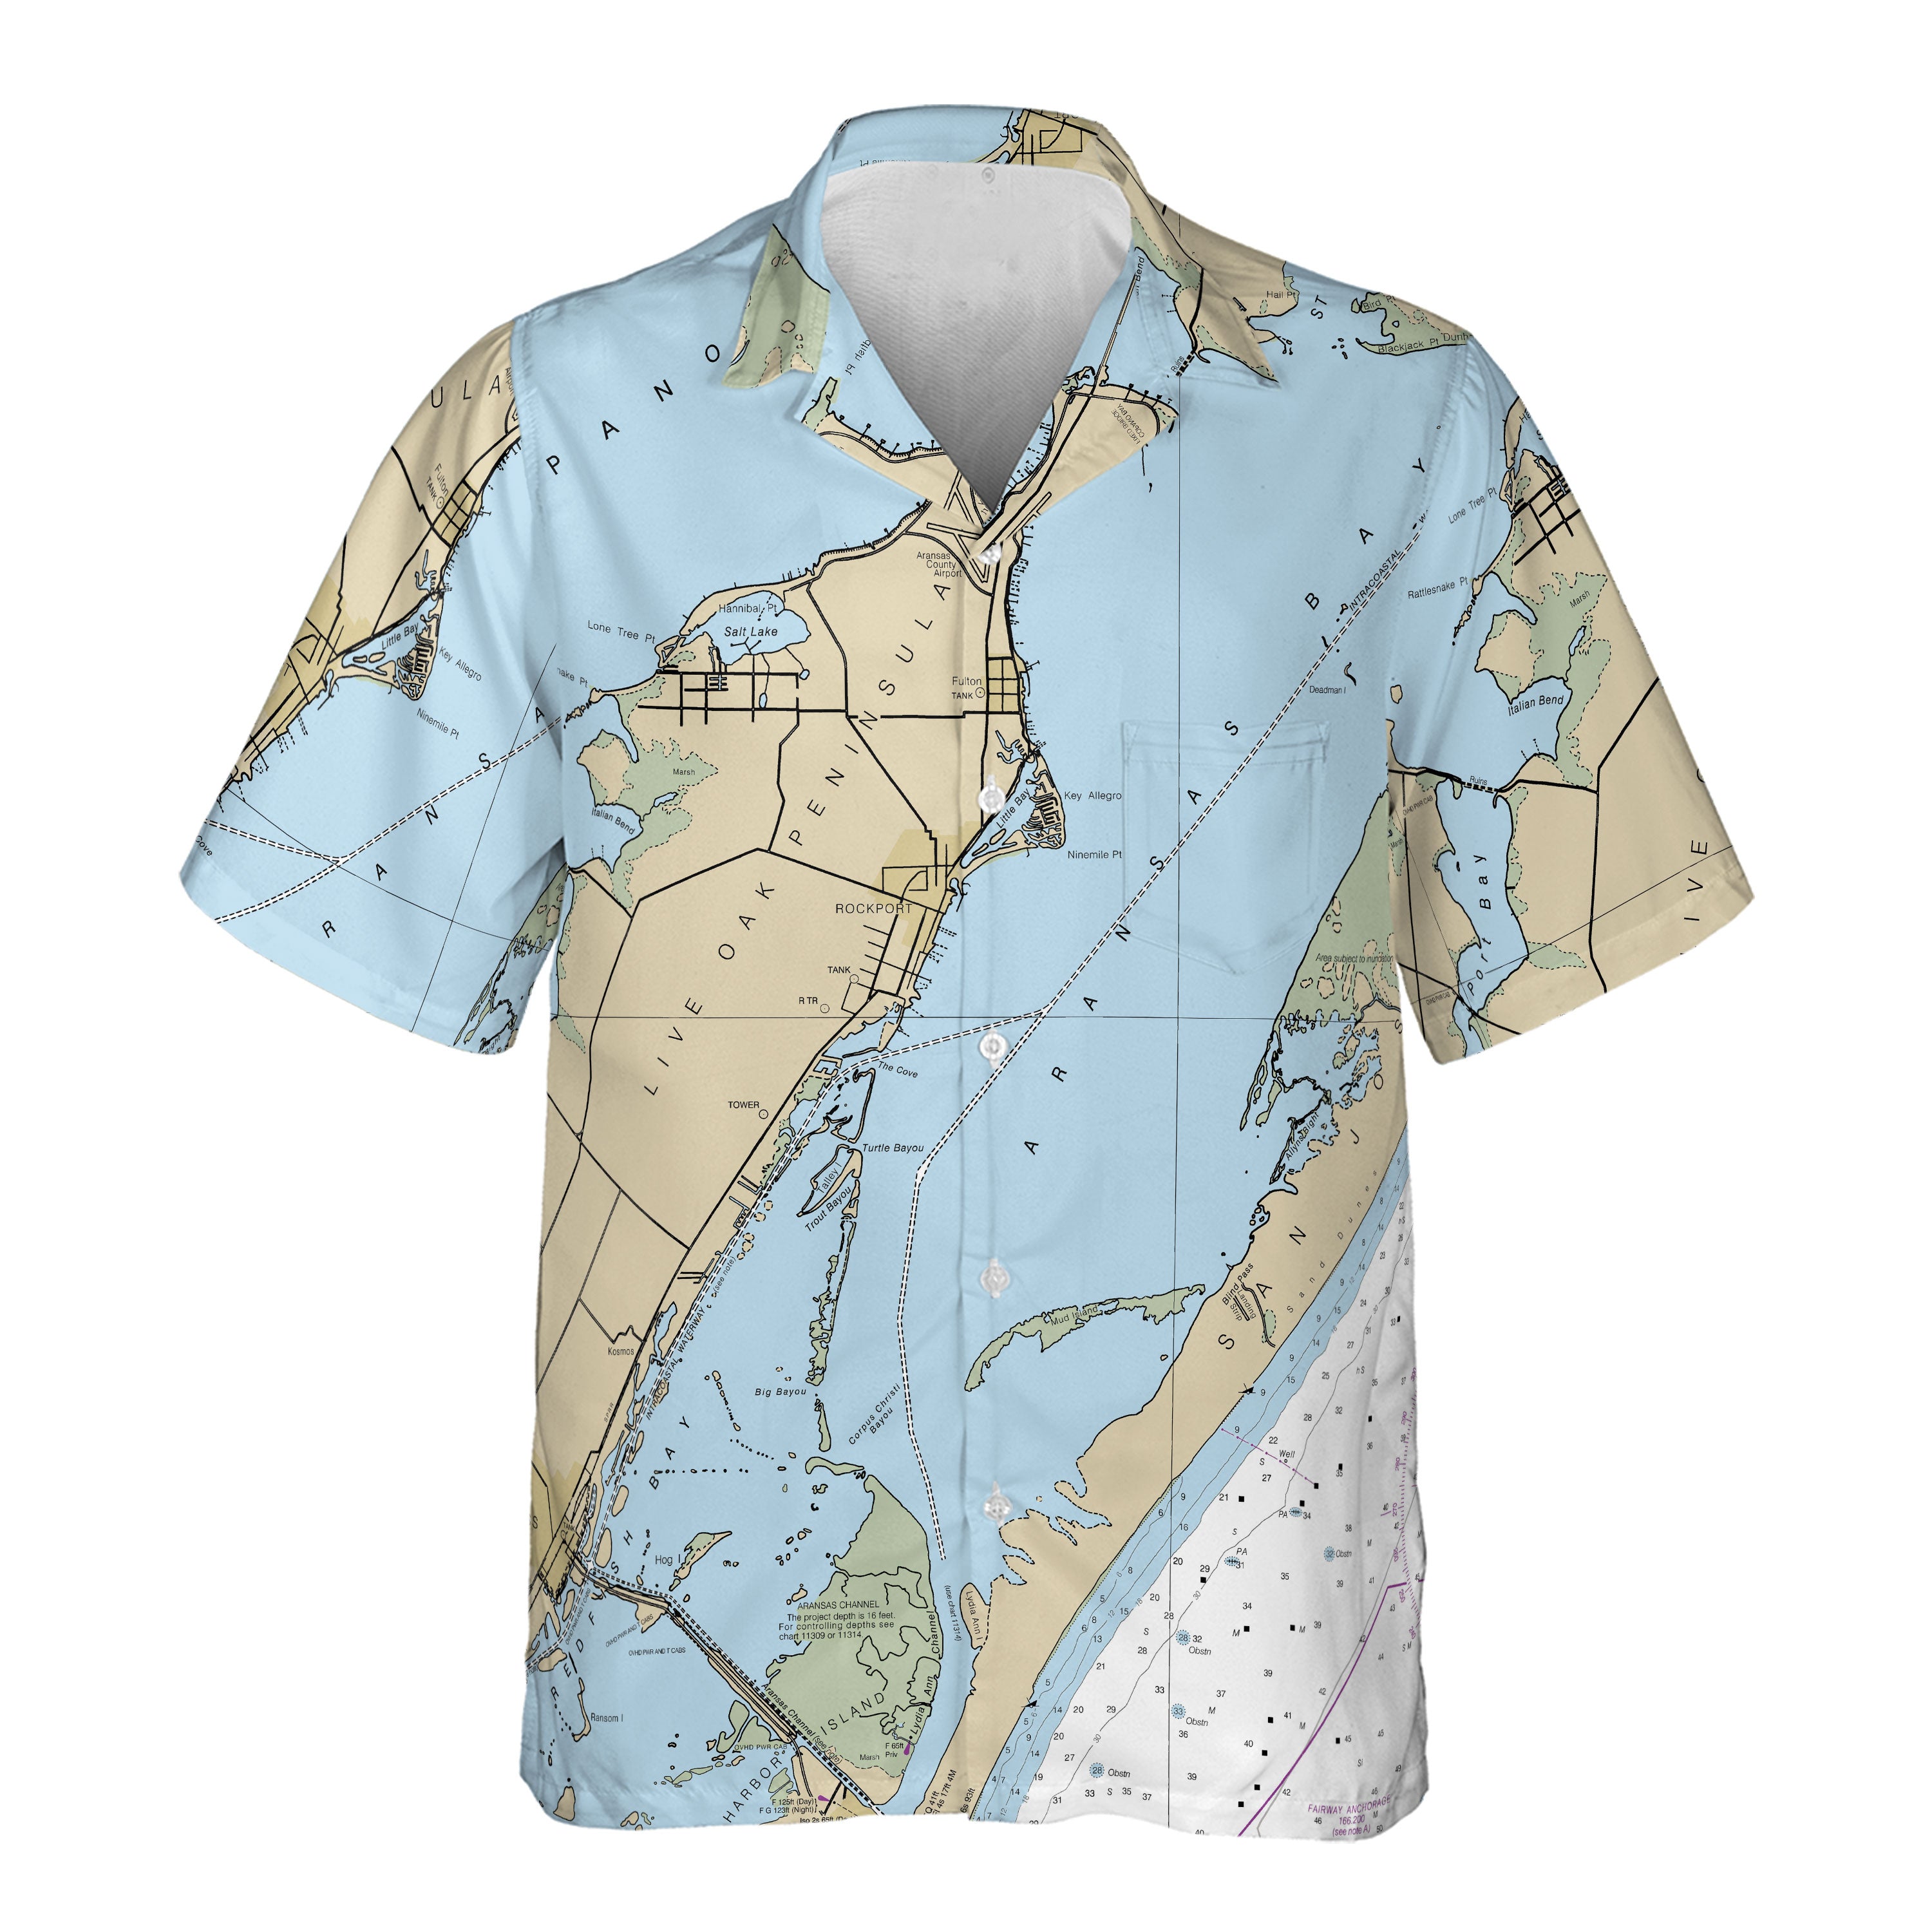 The Rockport Explorer Pocket Shirt